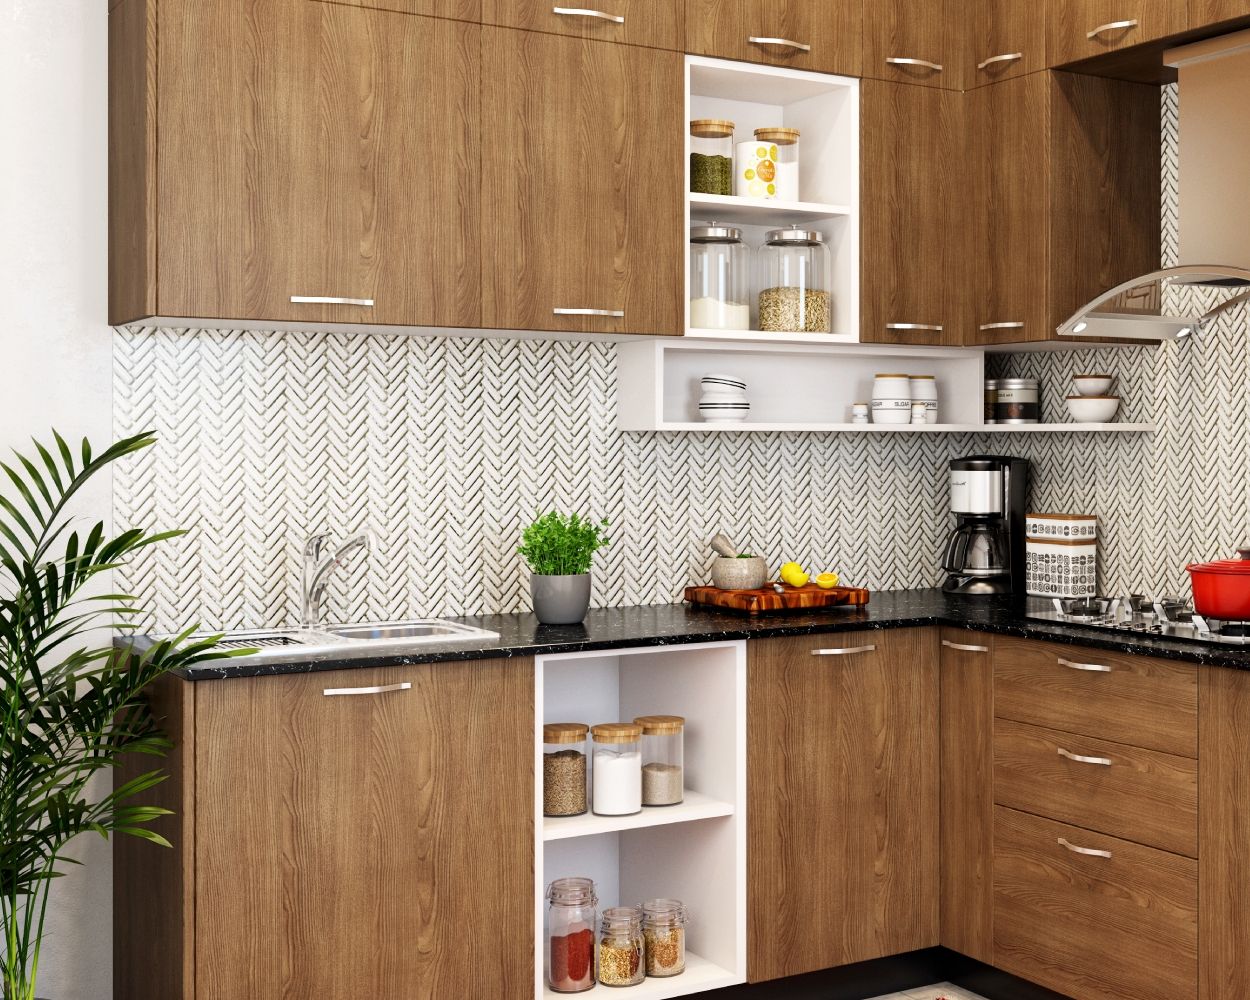 Modern Rectangular Black And White Herringbone Kitchen Tile Design